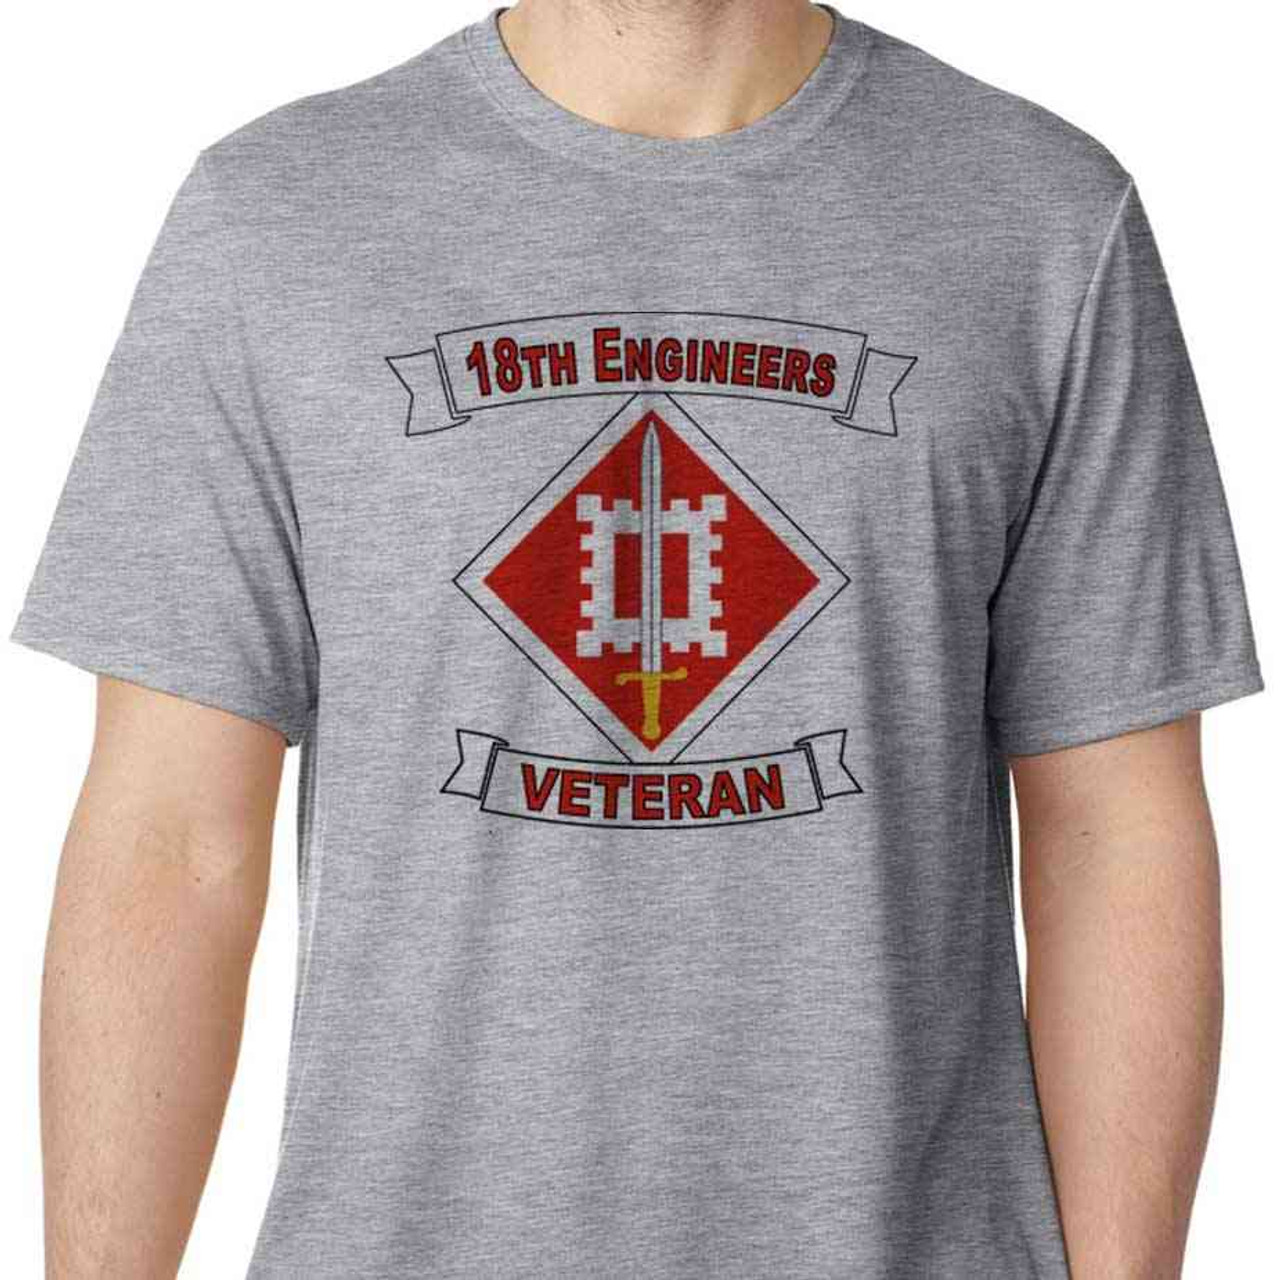 army 18th engineers veteran performance tshirt